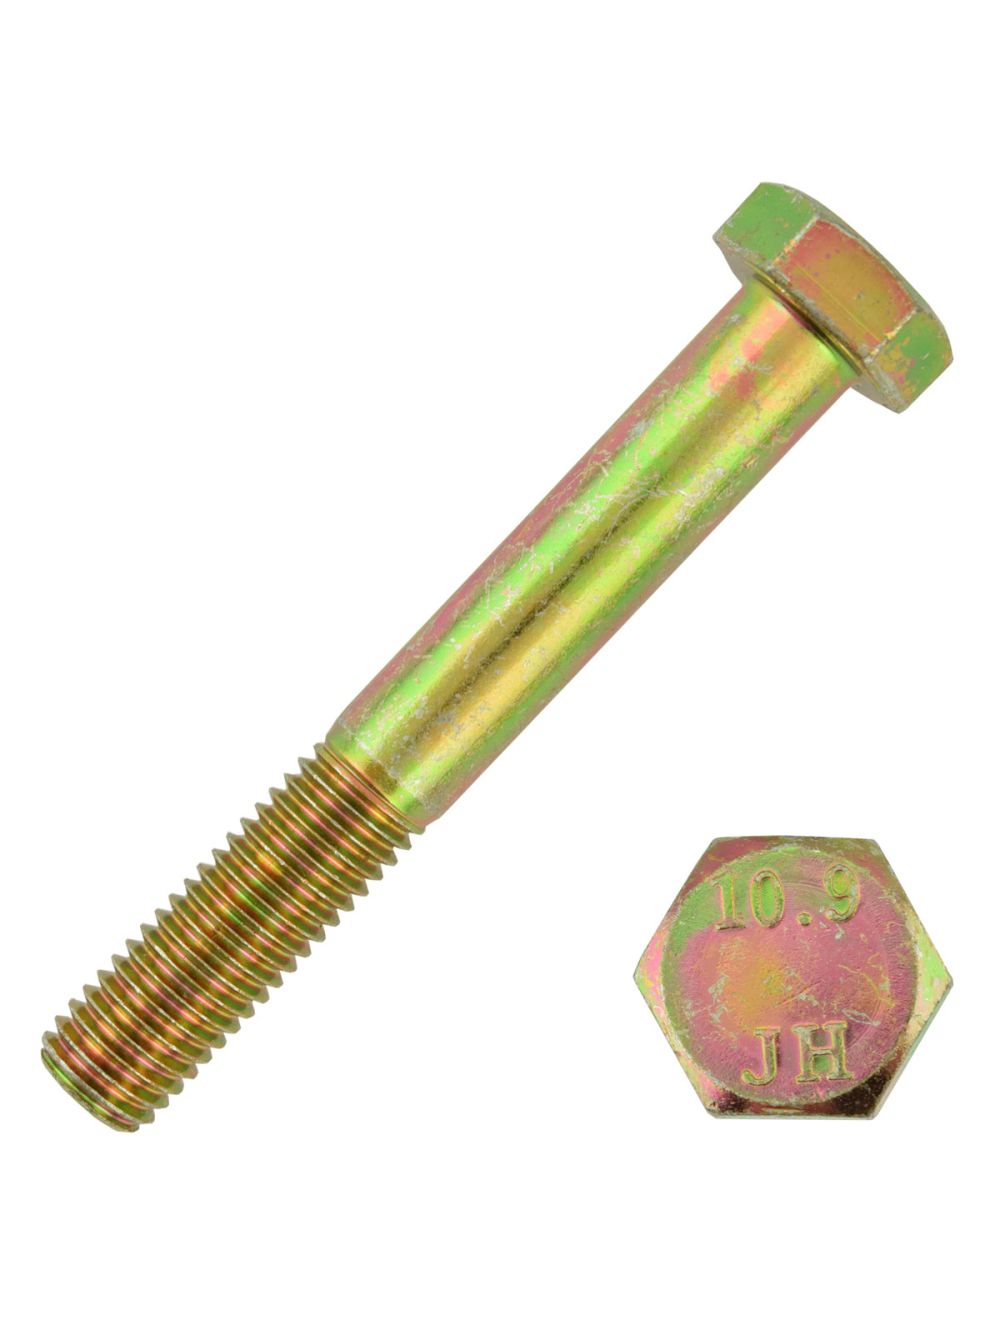 M12-1.75 x 25 mm DIN 961 Hex Cap Screws Yellow Zinc 10.9 Steel LOT OF 4